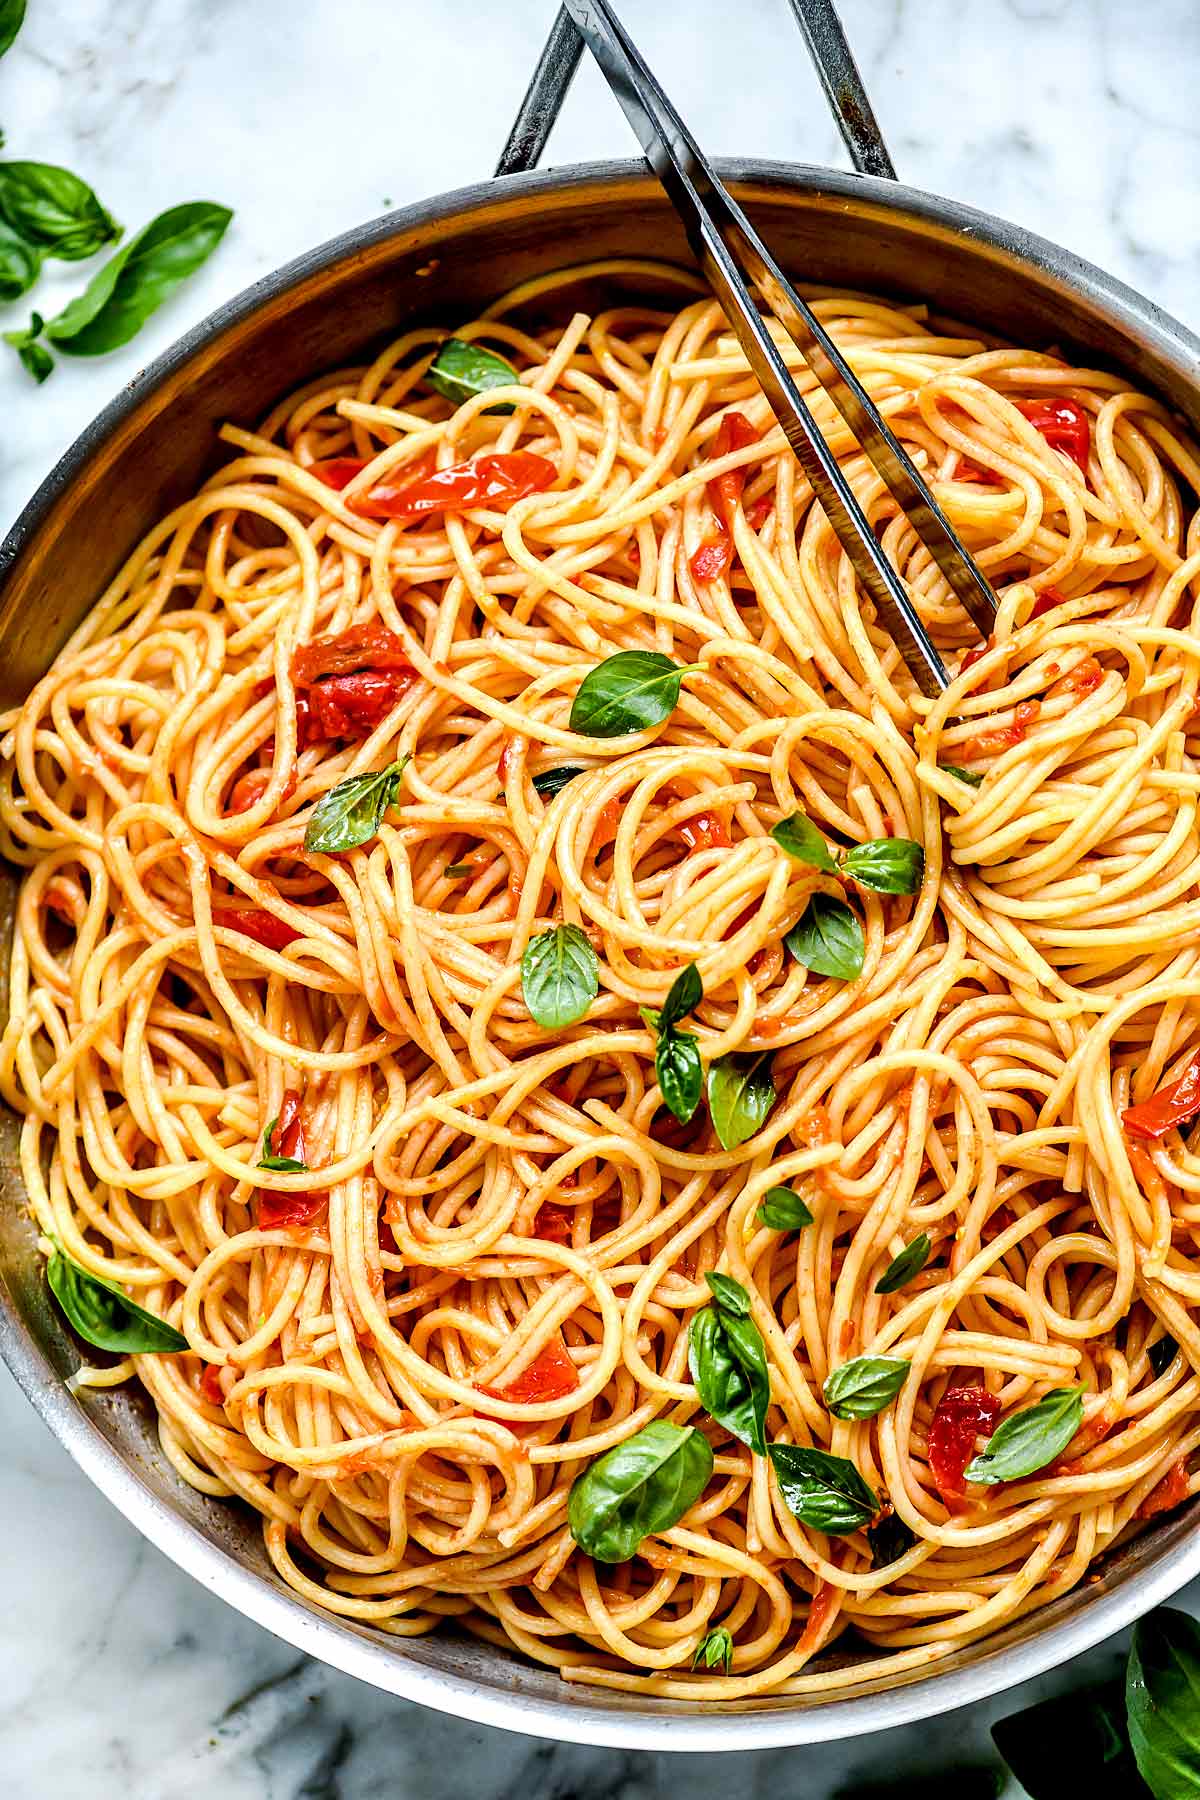 Easy Pasta Dinner Ideas : 40 Healthy Pasta Recipes Light Pasta Dinner